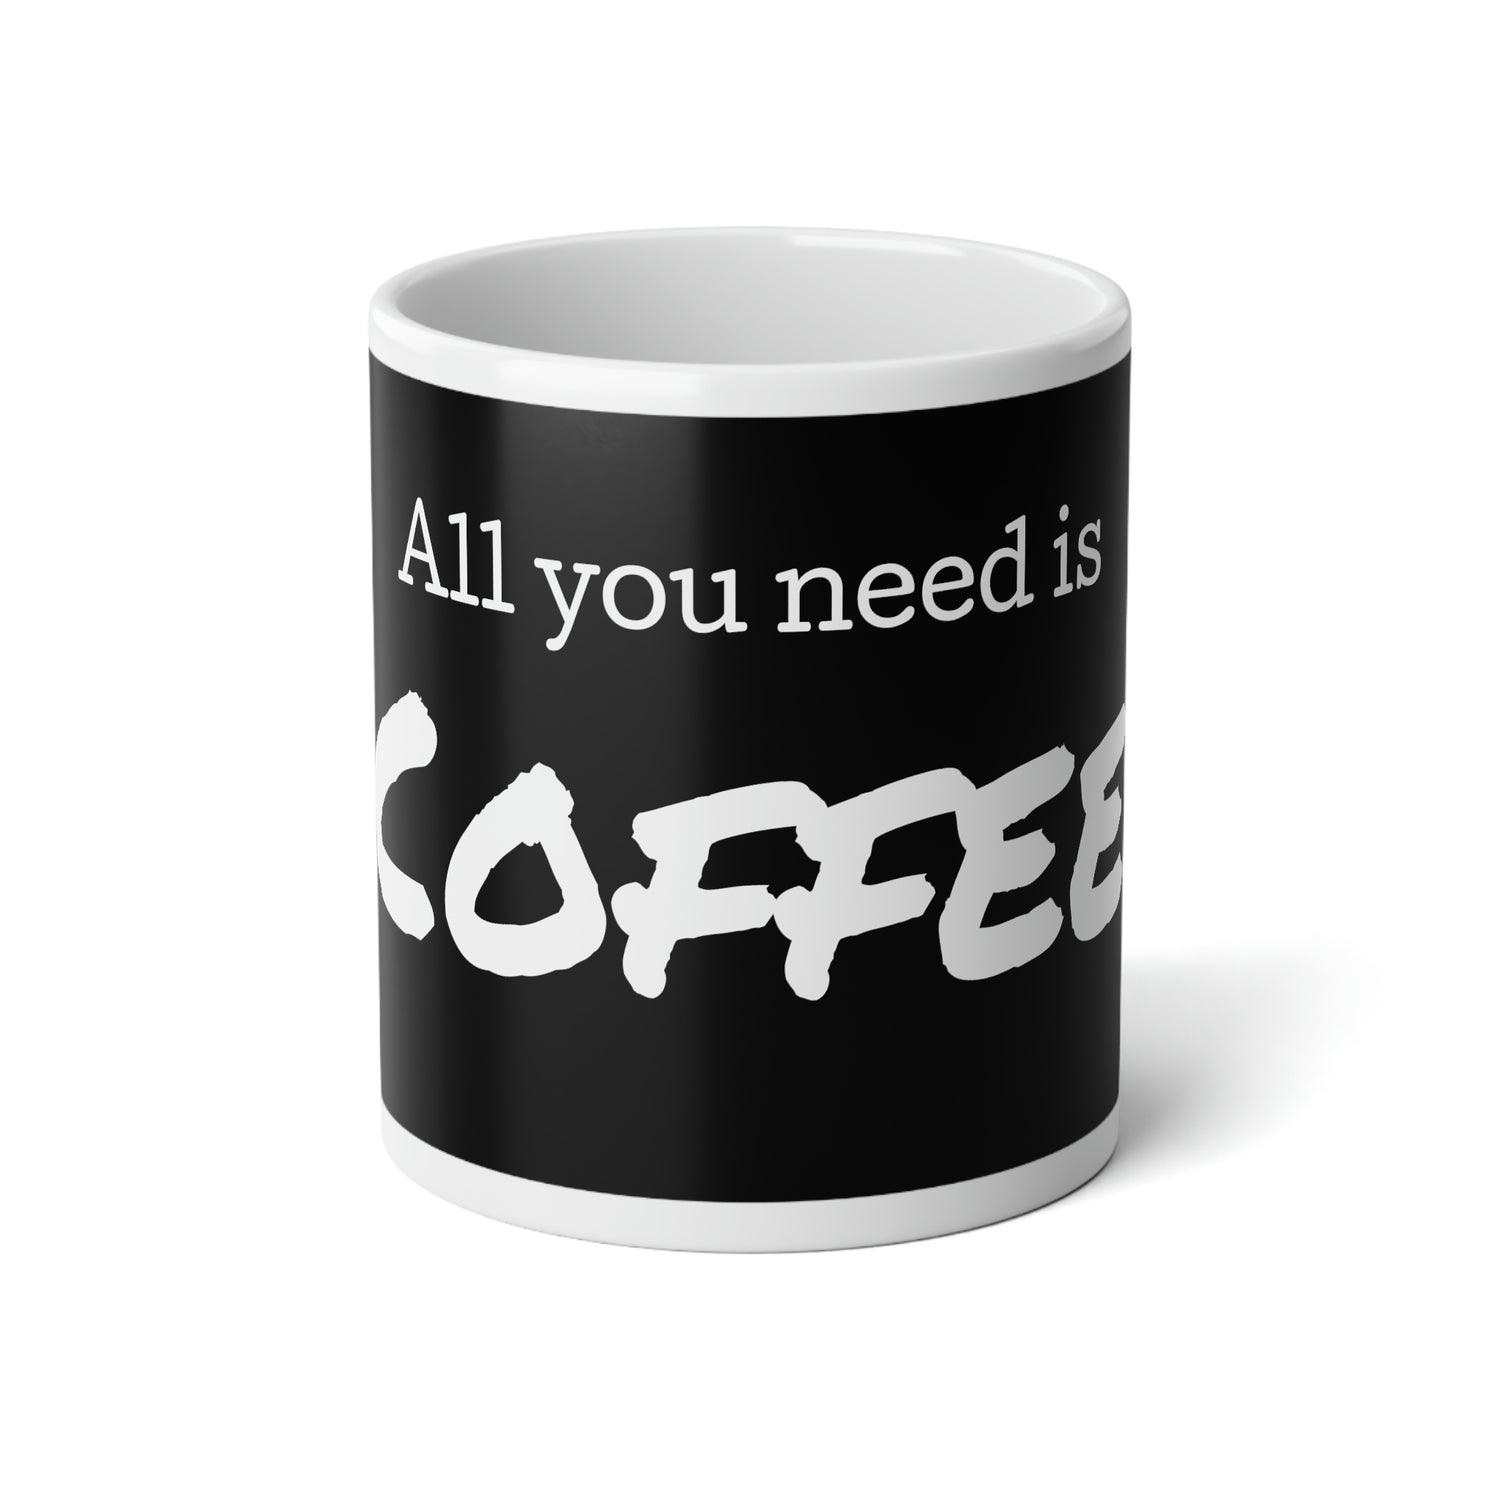 All you need is Coffee Jumbo Mug, 20oz